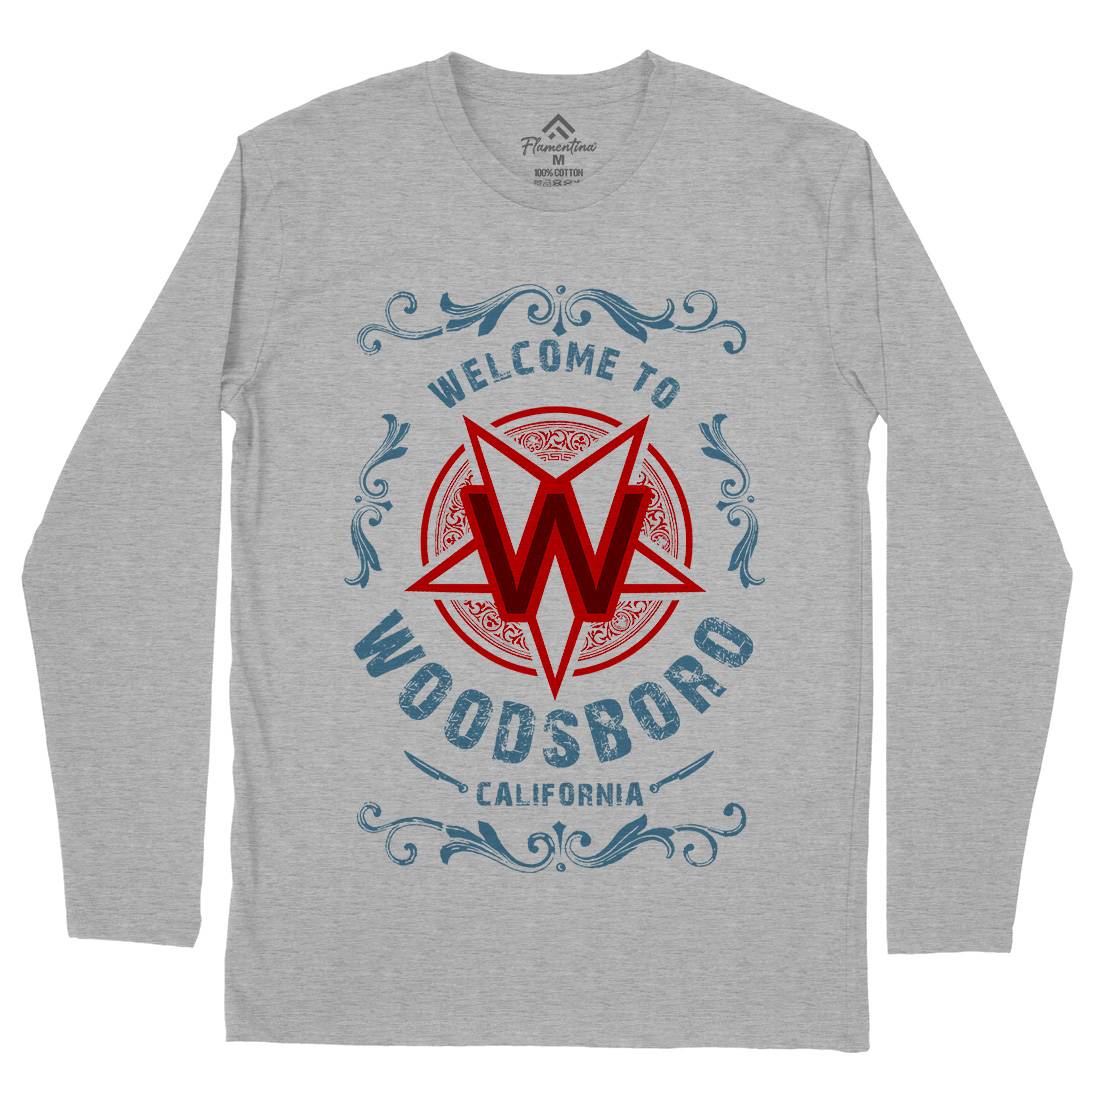 Woodsboro Mens Long Sleeve T-Shirt Horror D292